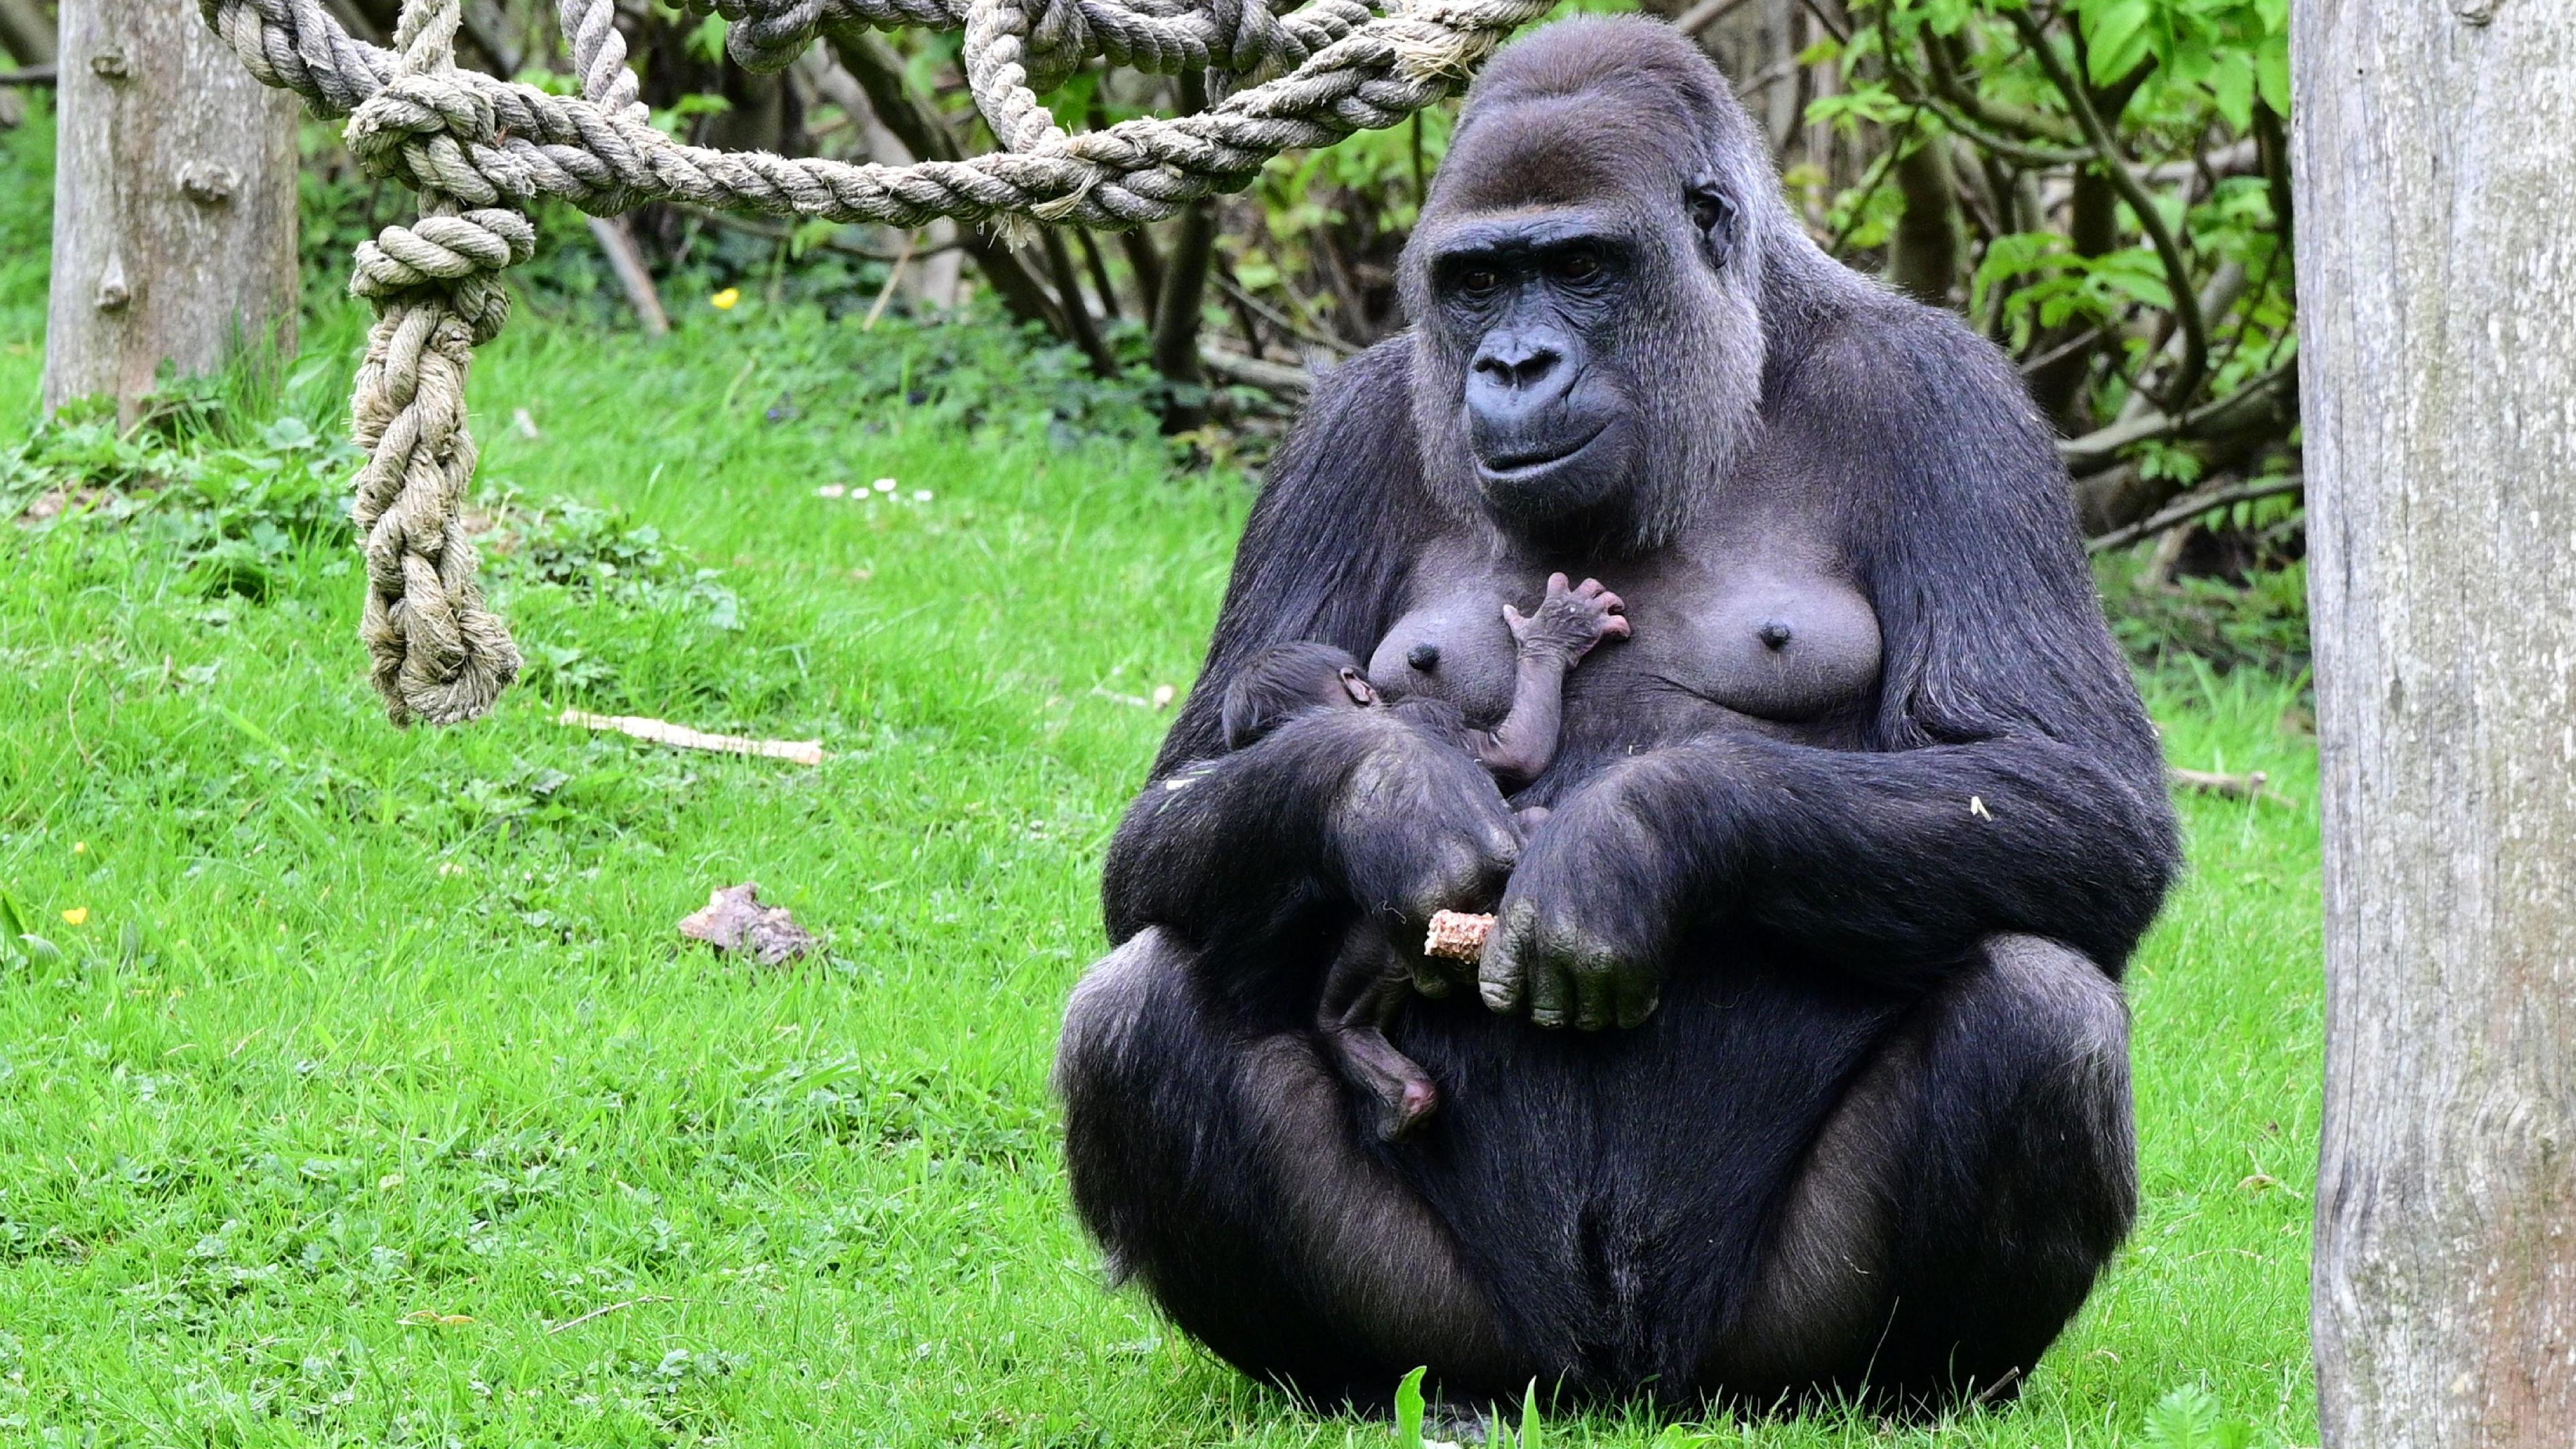 Die Gorillas im Gaiazoo Kerkrade haben Nachwuchs bekommen. Es ist das erste Gorilla-Baby seit fast zehn Jahren.